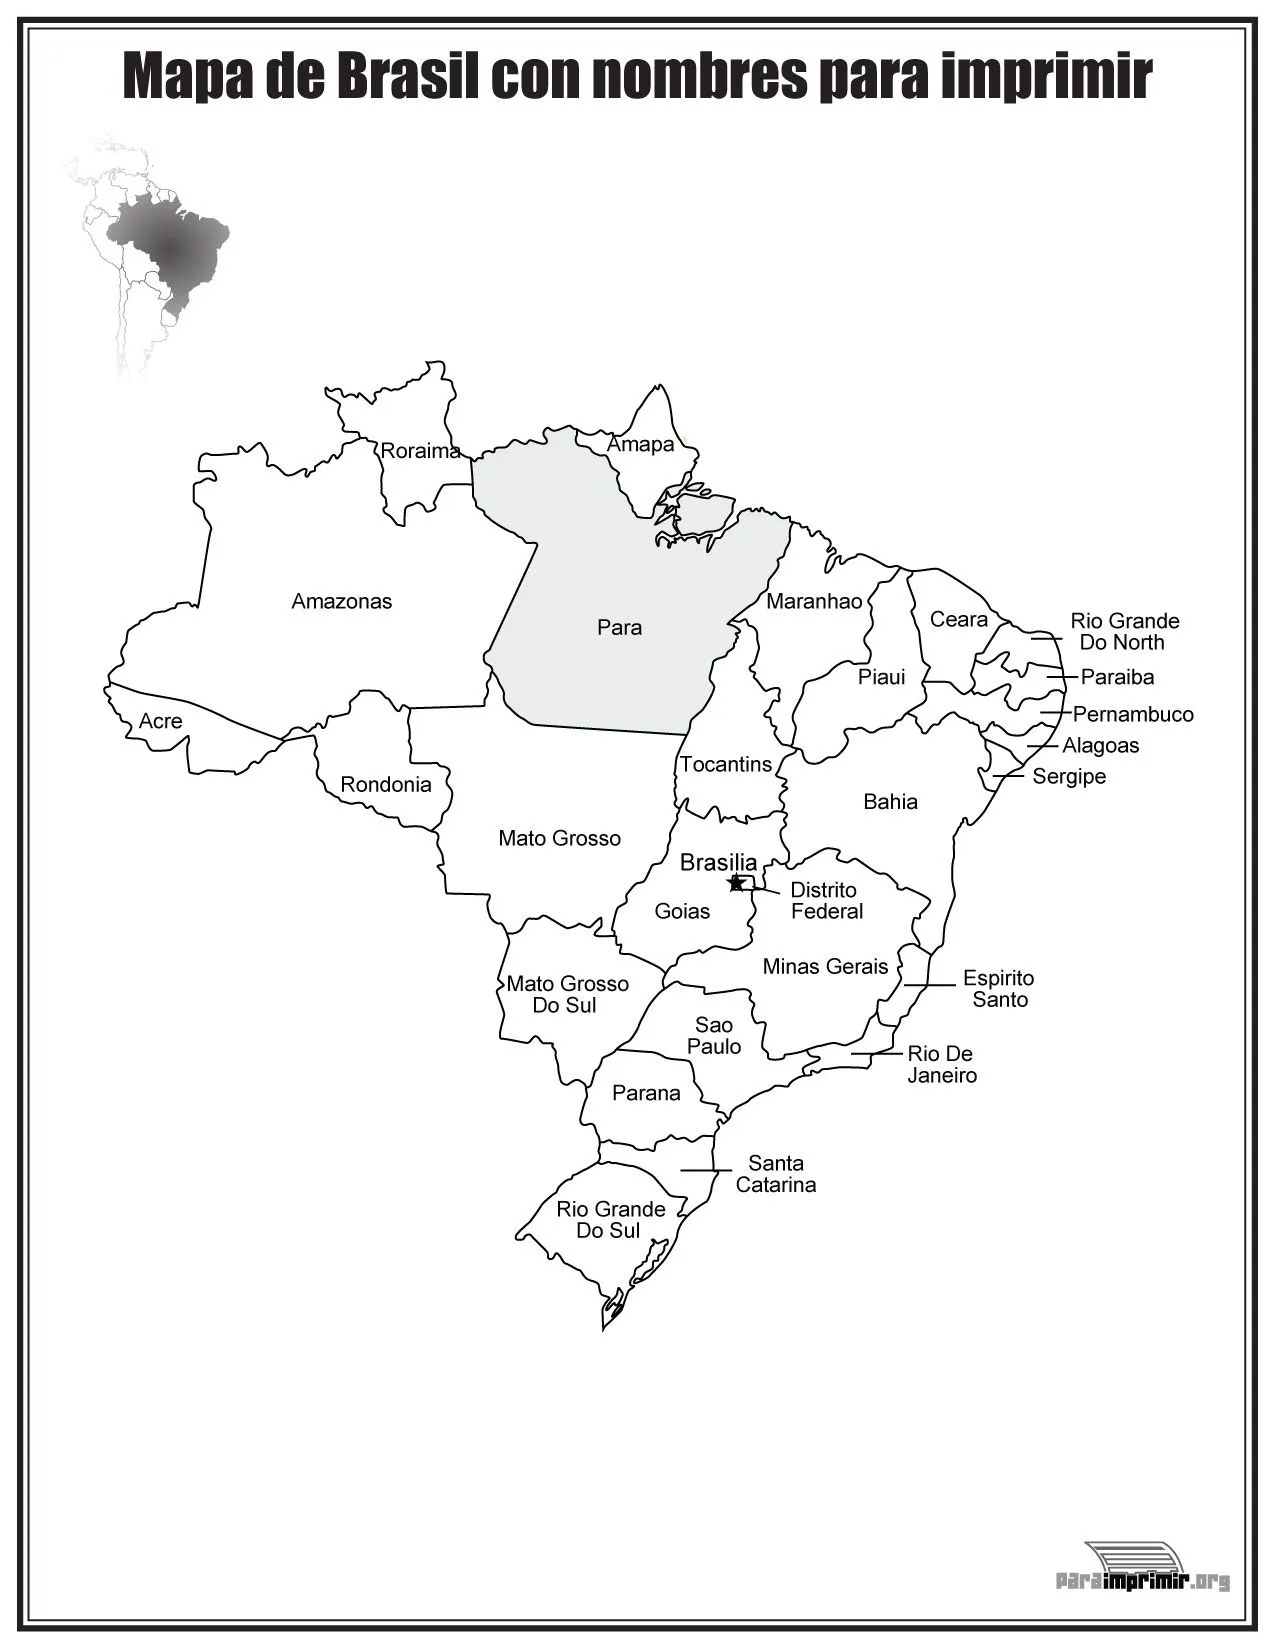 Mapa de Brazil con nombres para imprimir